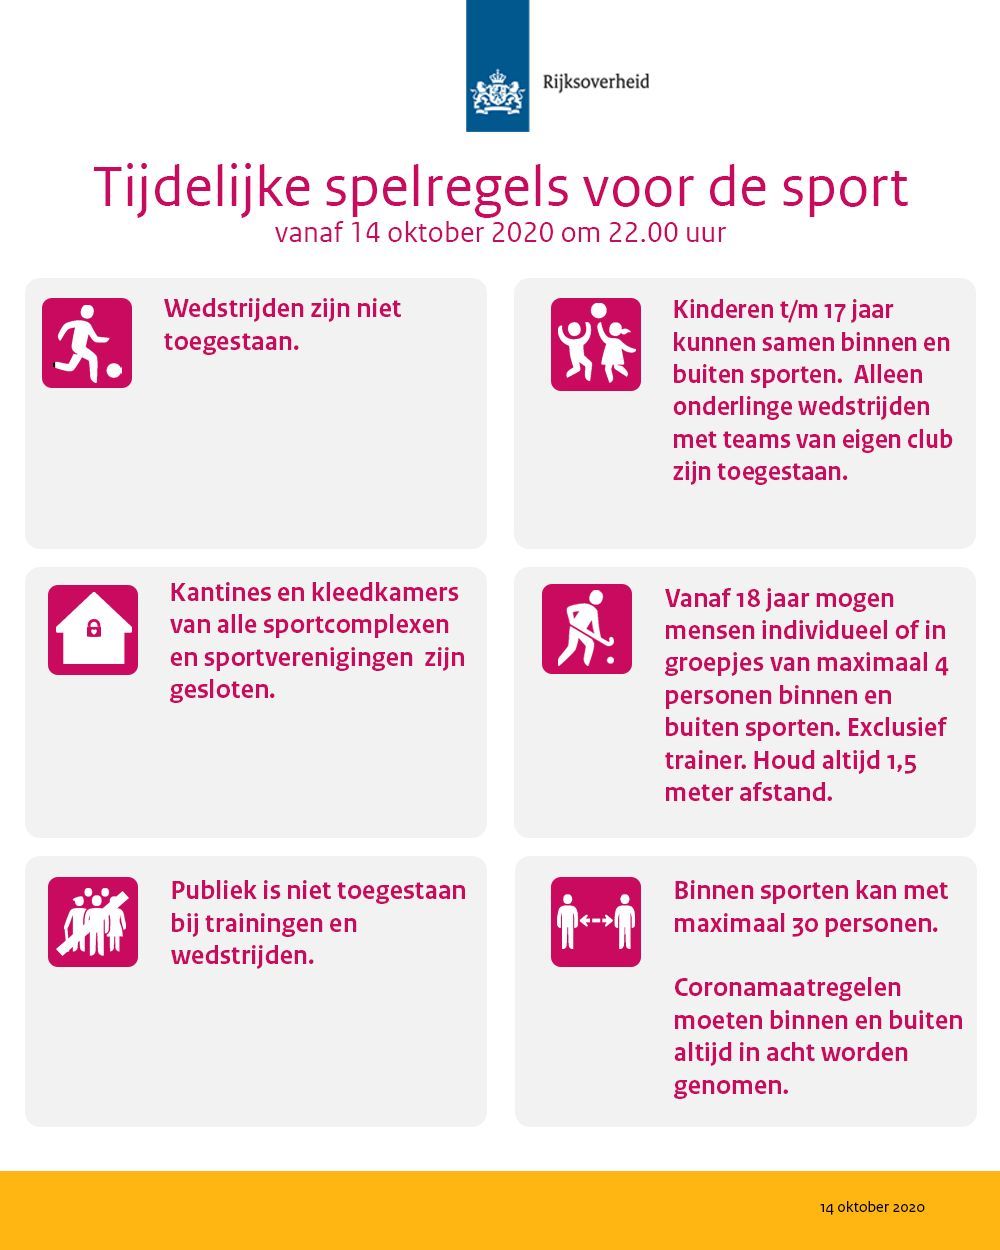 Poster met visuals over tijdelijke spelregels voor de sport per 14 oktober 2020 vanwege corona